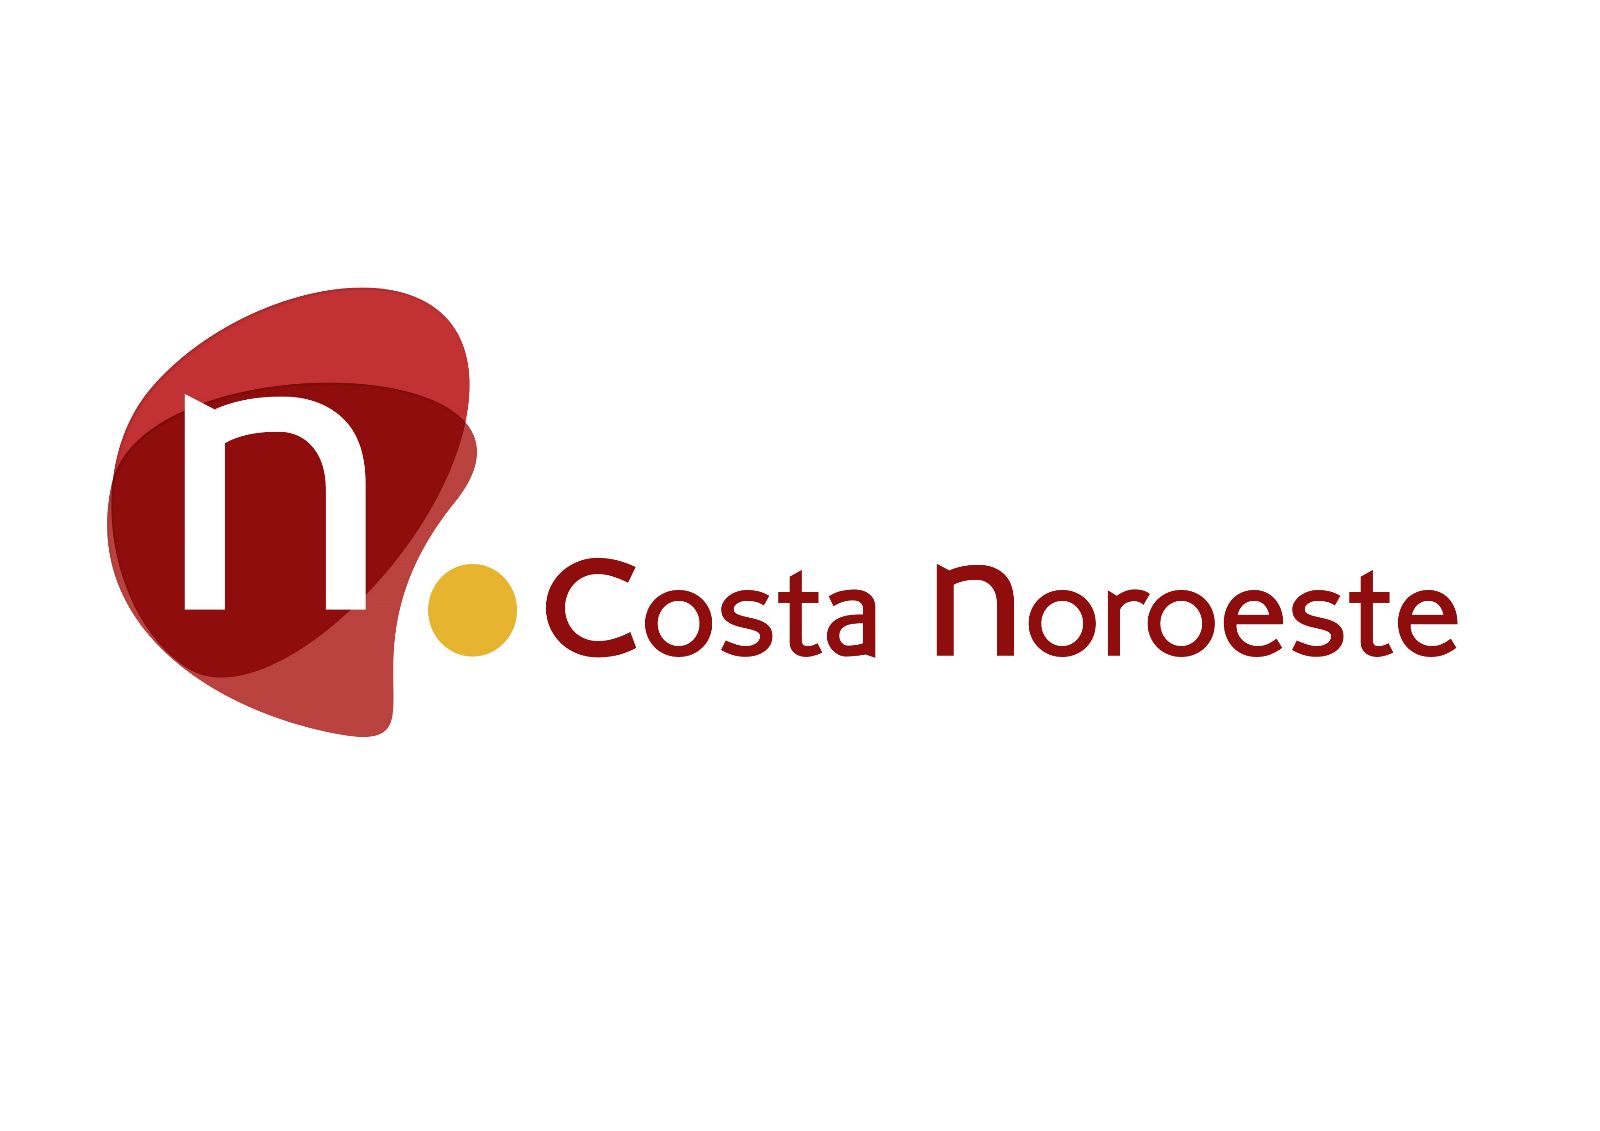 Logo del canal Costa Noroeste